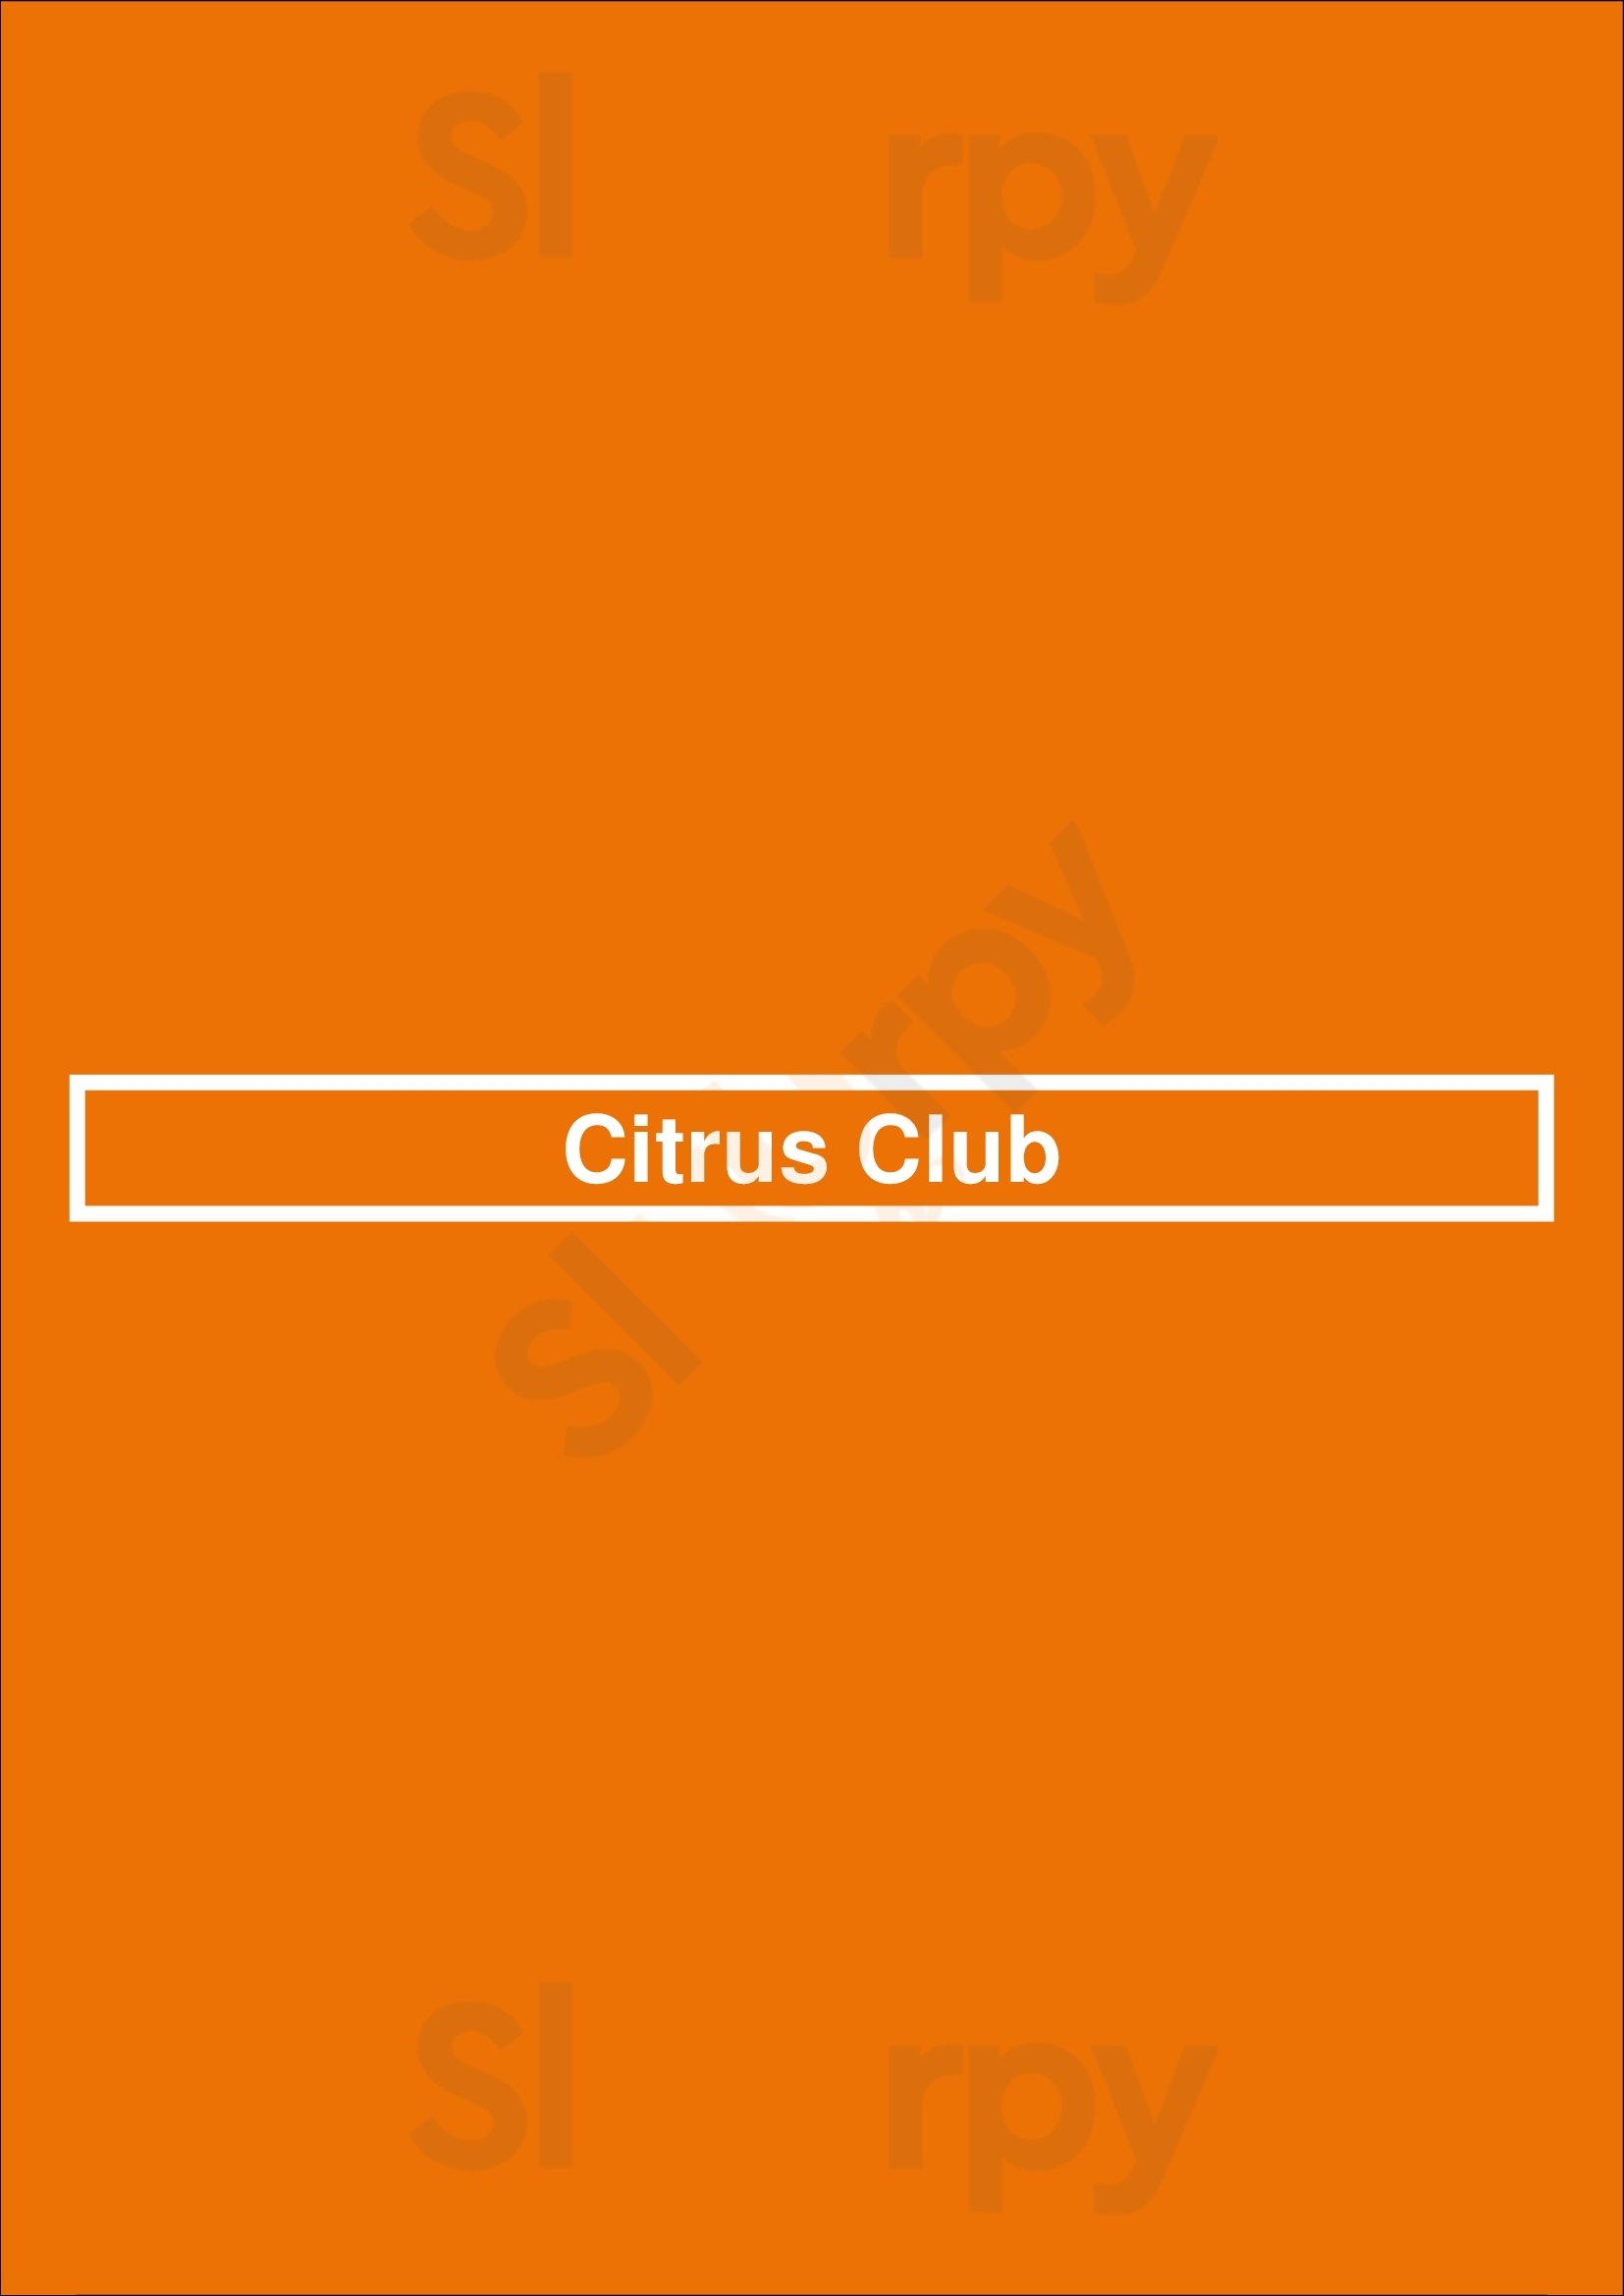 The Citrus Club San Francisco Menu - 1